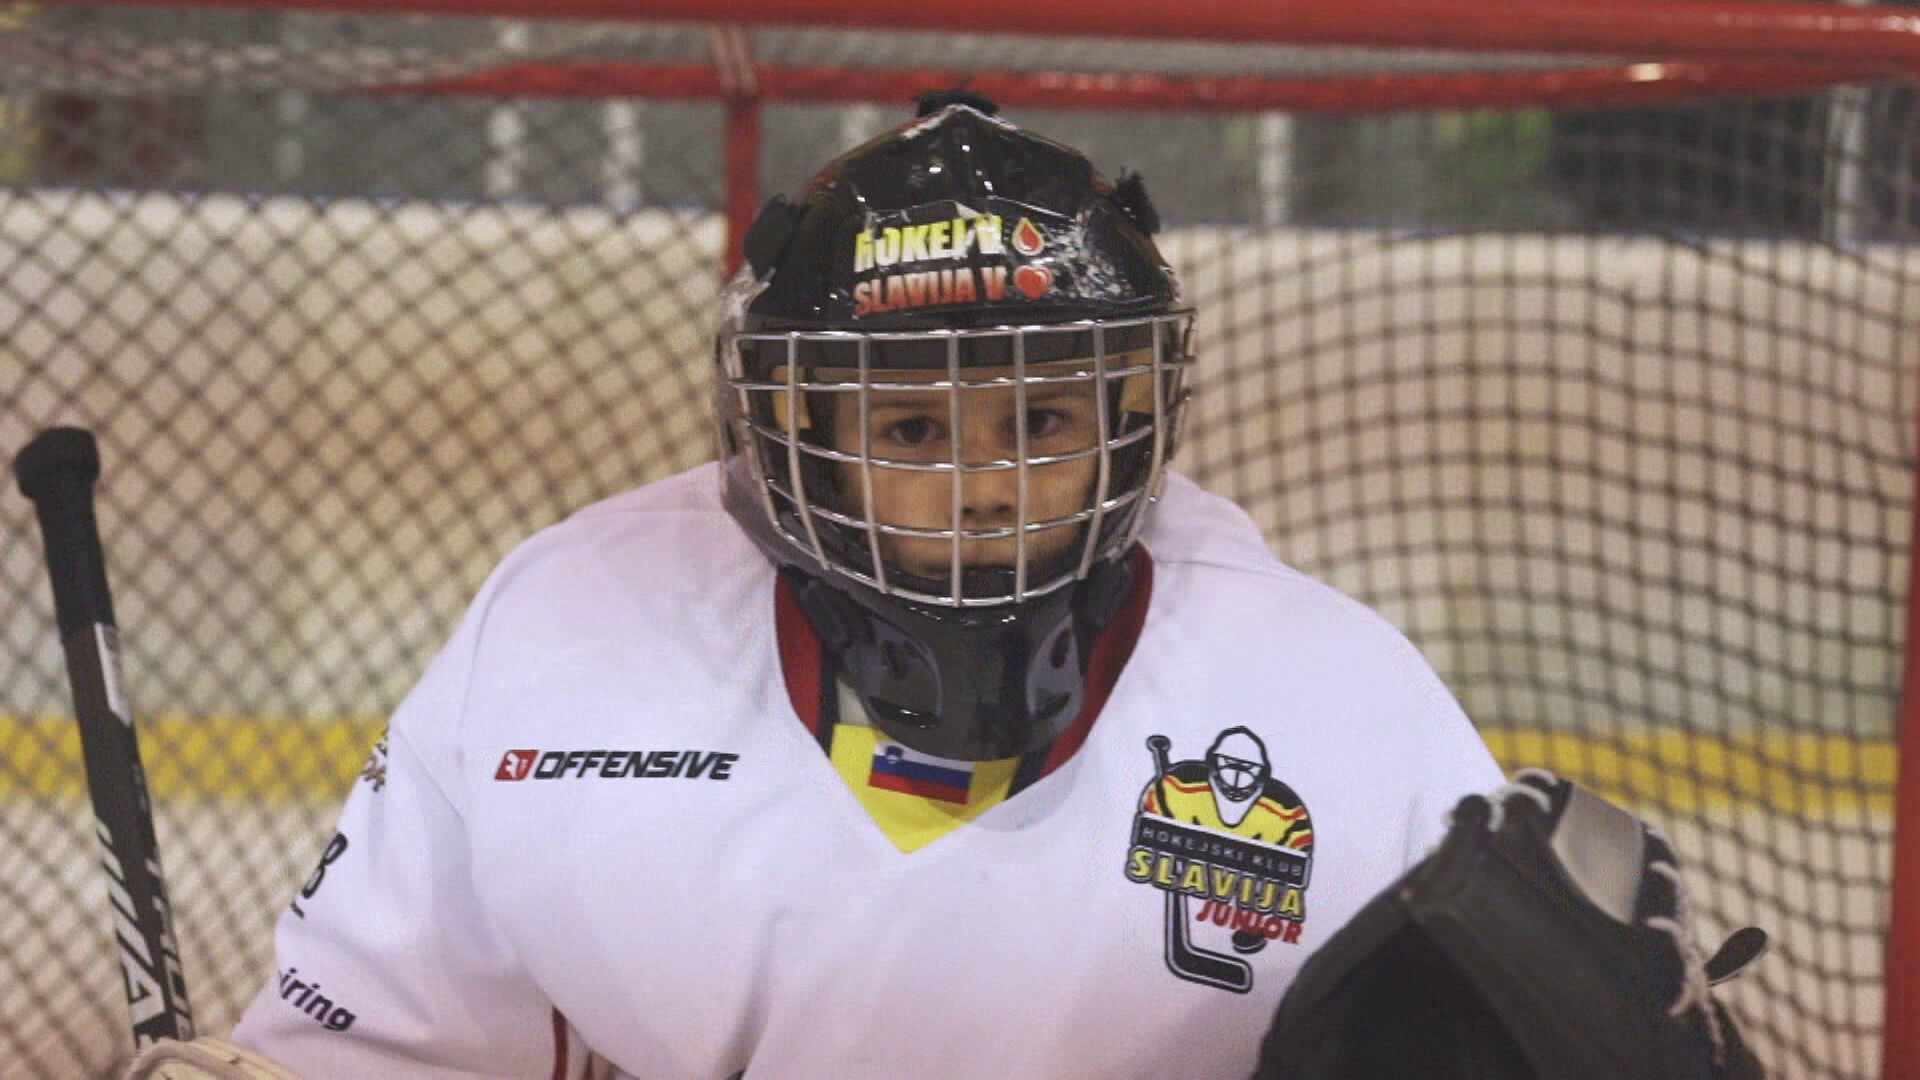 veer canvas Verkeerd Schooltv: Wat heb je nodig bij ijshockey? - Beschermers, een helm en snelle  schaatsen